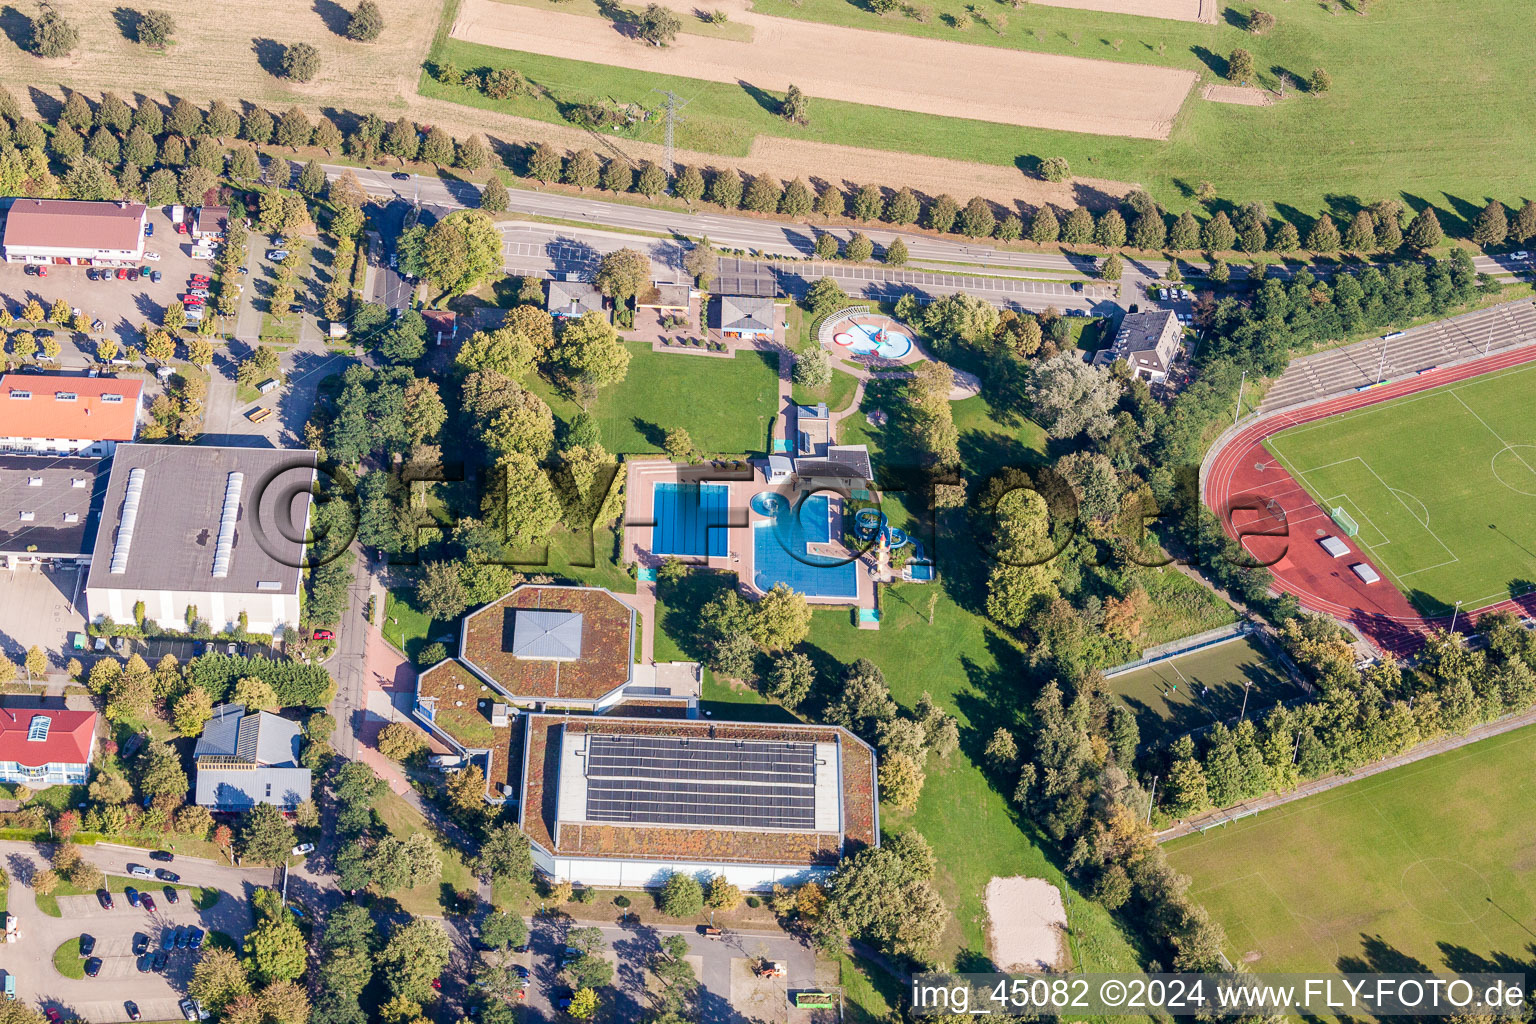 Vue aérienne de Piscine de la piscine extérieure Waldbronn à le quartier Busenbach in Waldbronn dans le département Bade-Wurtemberg, Allemagne